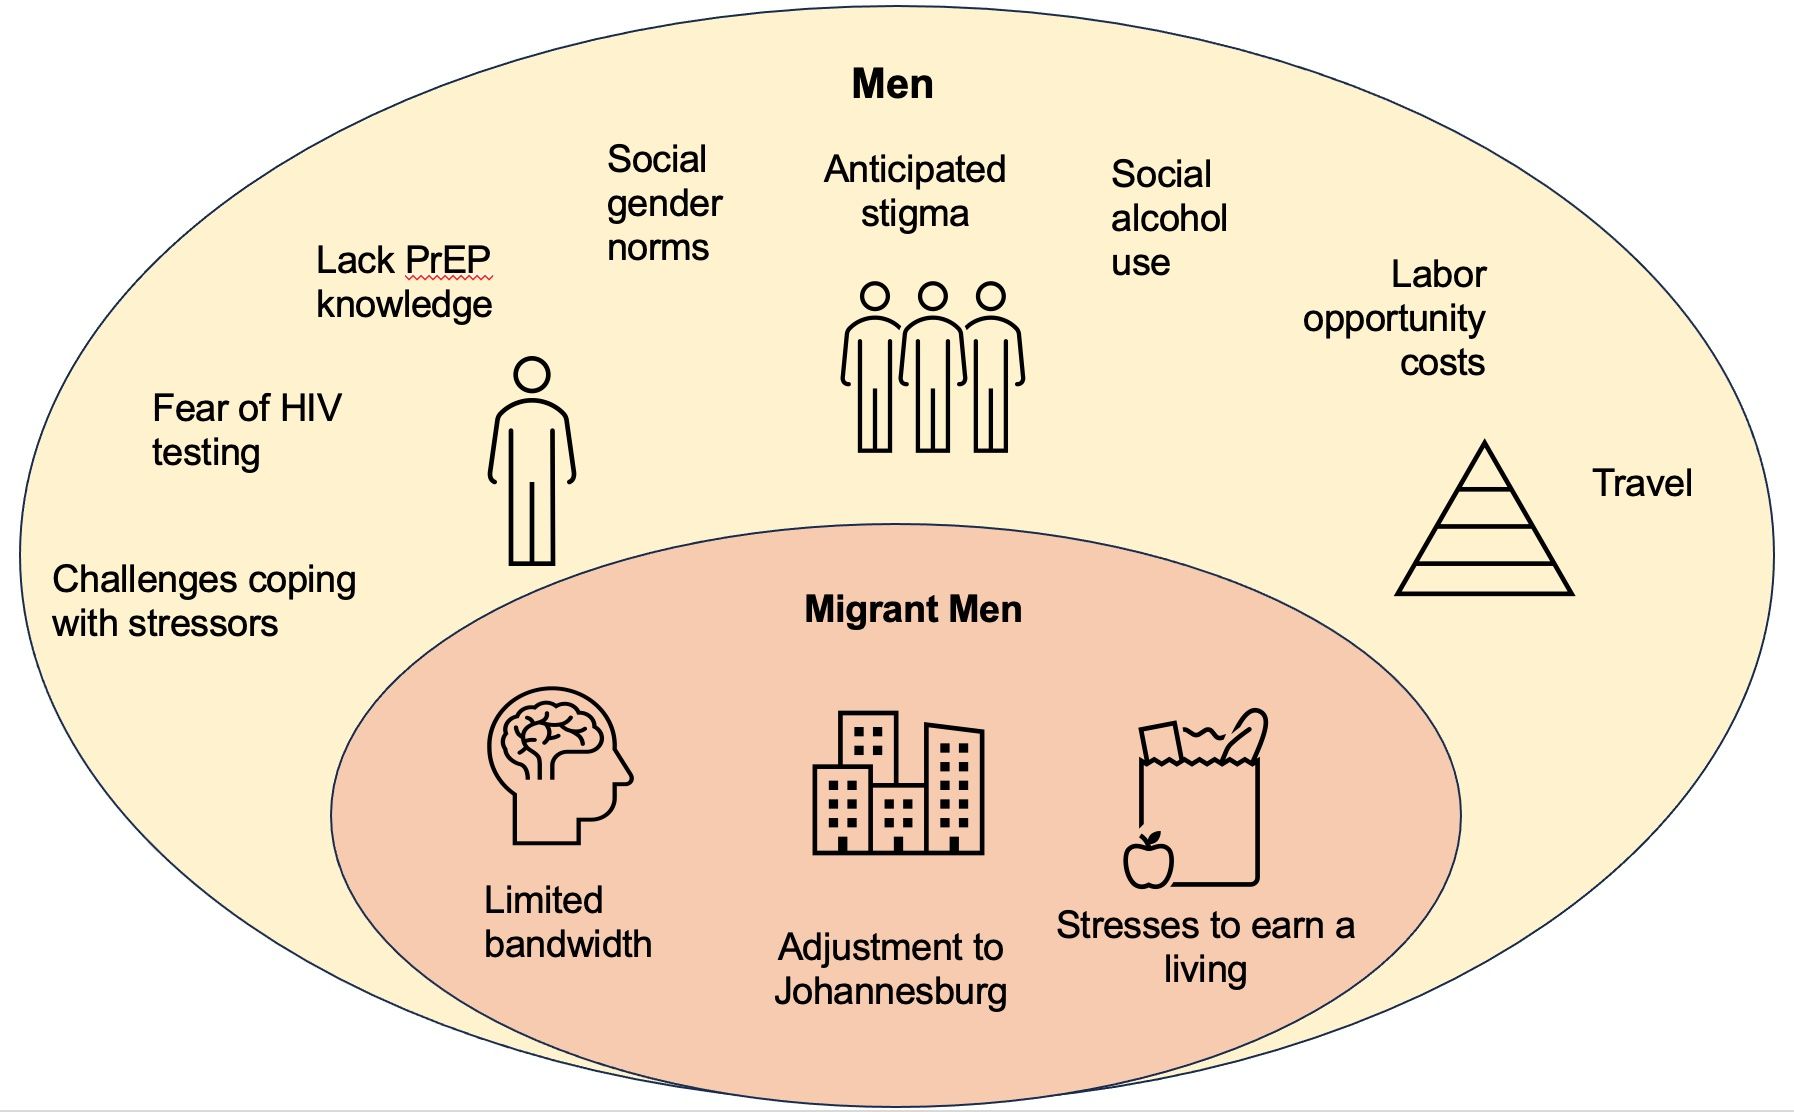 El estrés emocional es más perjudicial que el propio virus": Un estudio cualitativo para comprender las pruebas del VIH y el uso de la PrEP entre los hombres migrantes internos en Sudáfrica